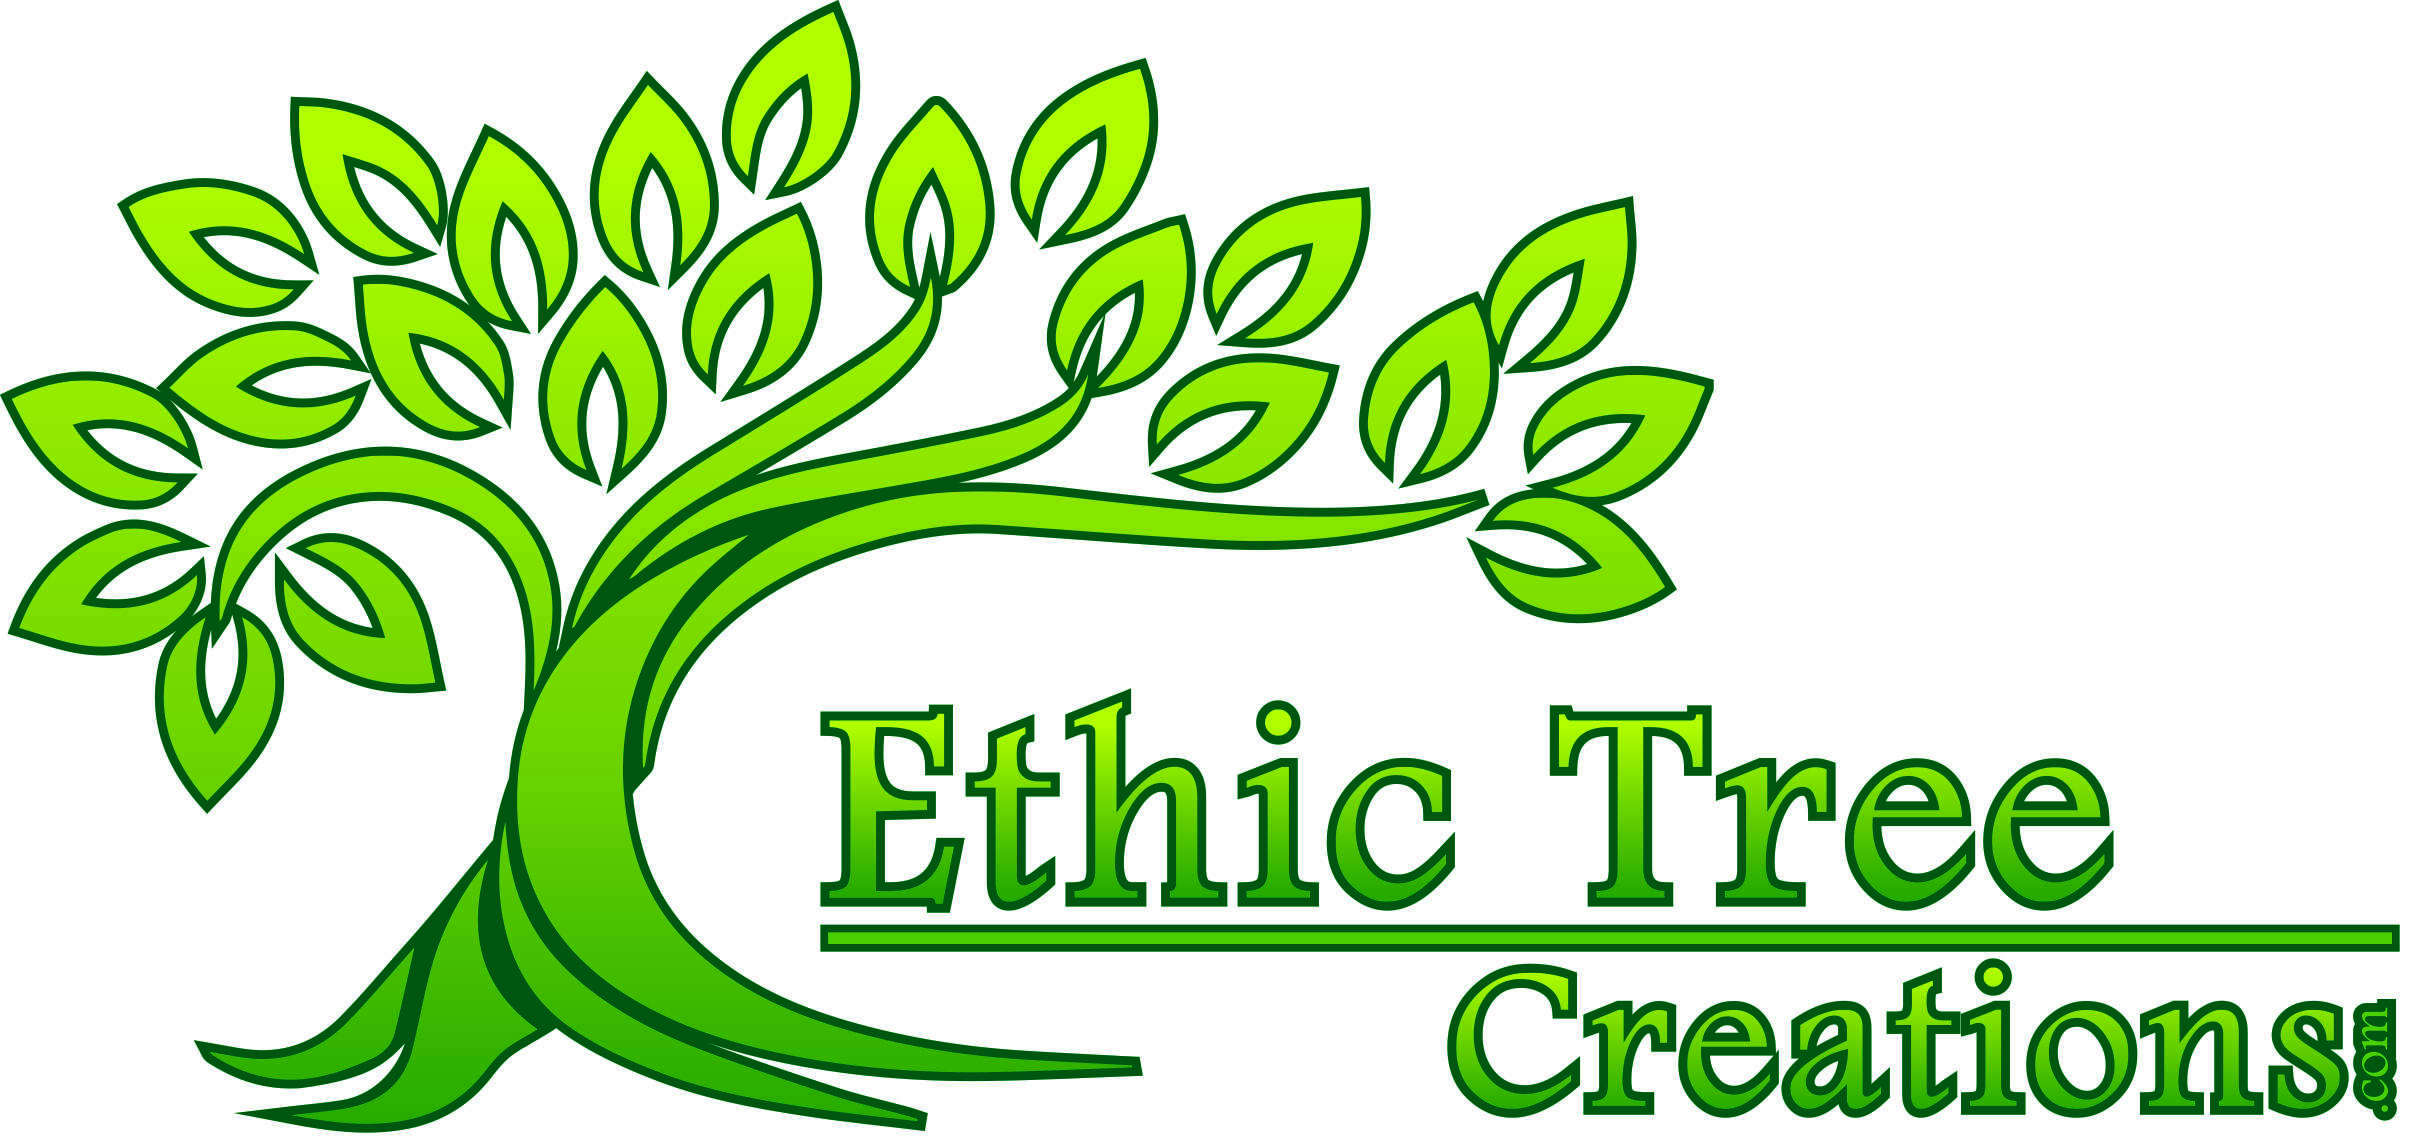 Ethic Tree Creations